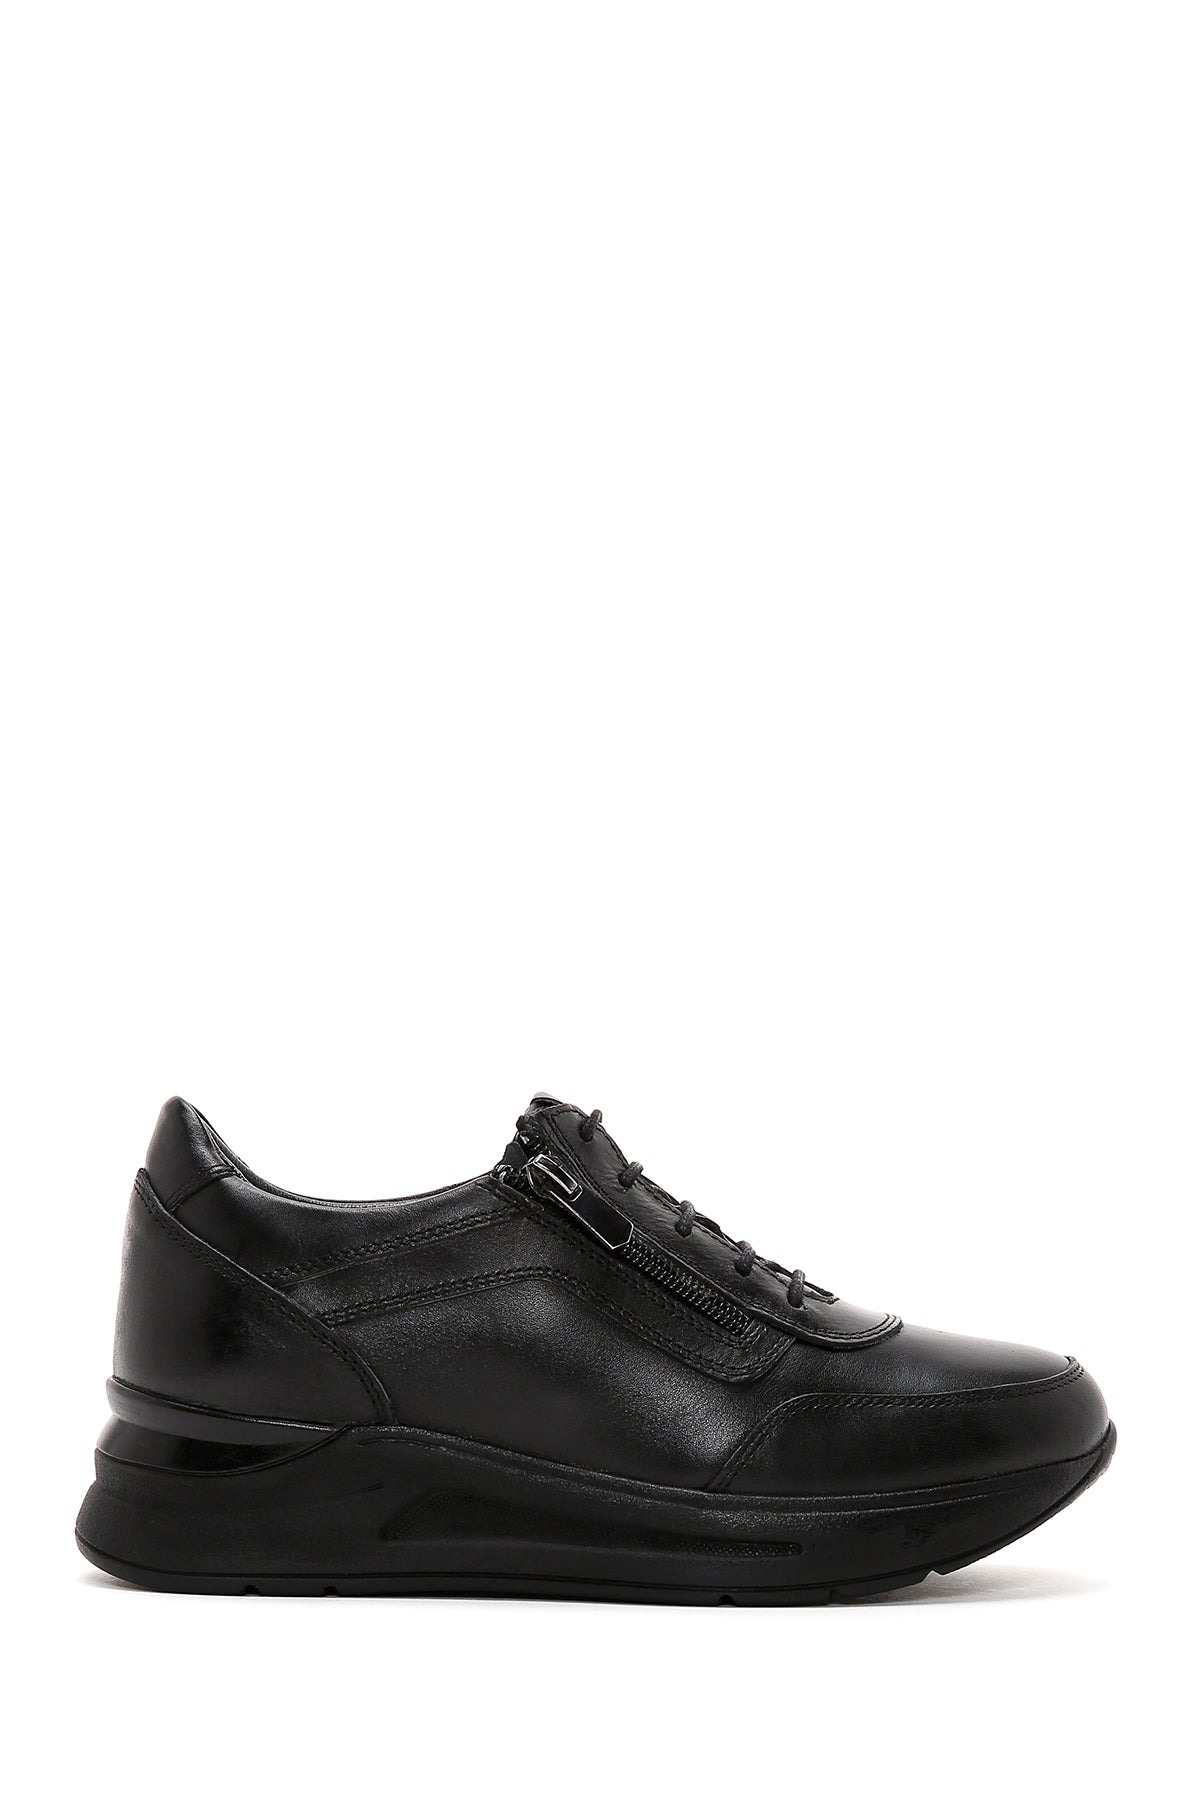 Kadın Siyah Deri Dolgu Topuk Ayakkabı 23SFD410918 | Derimod